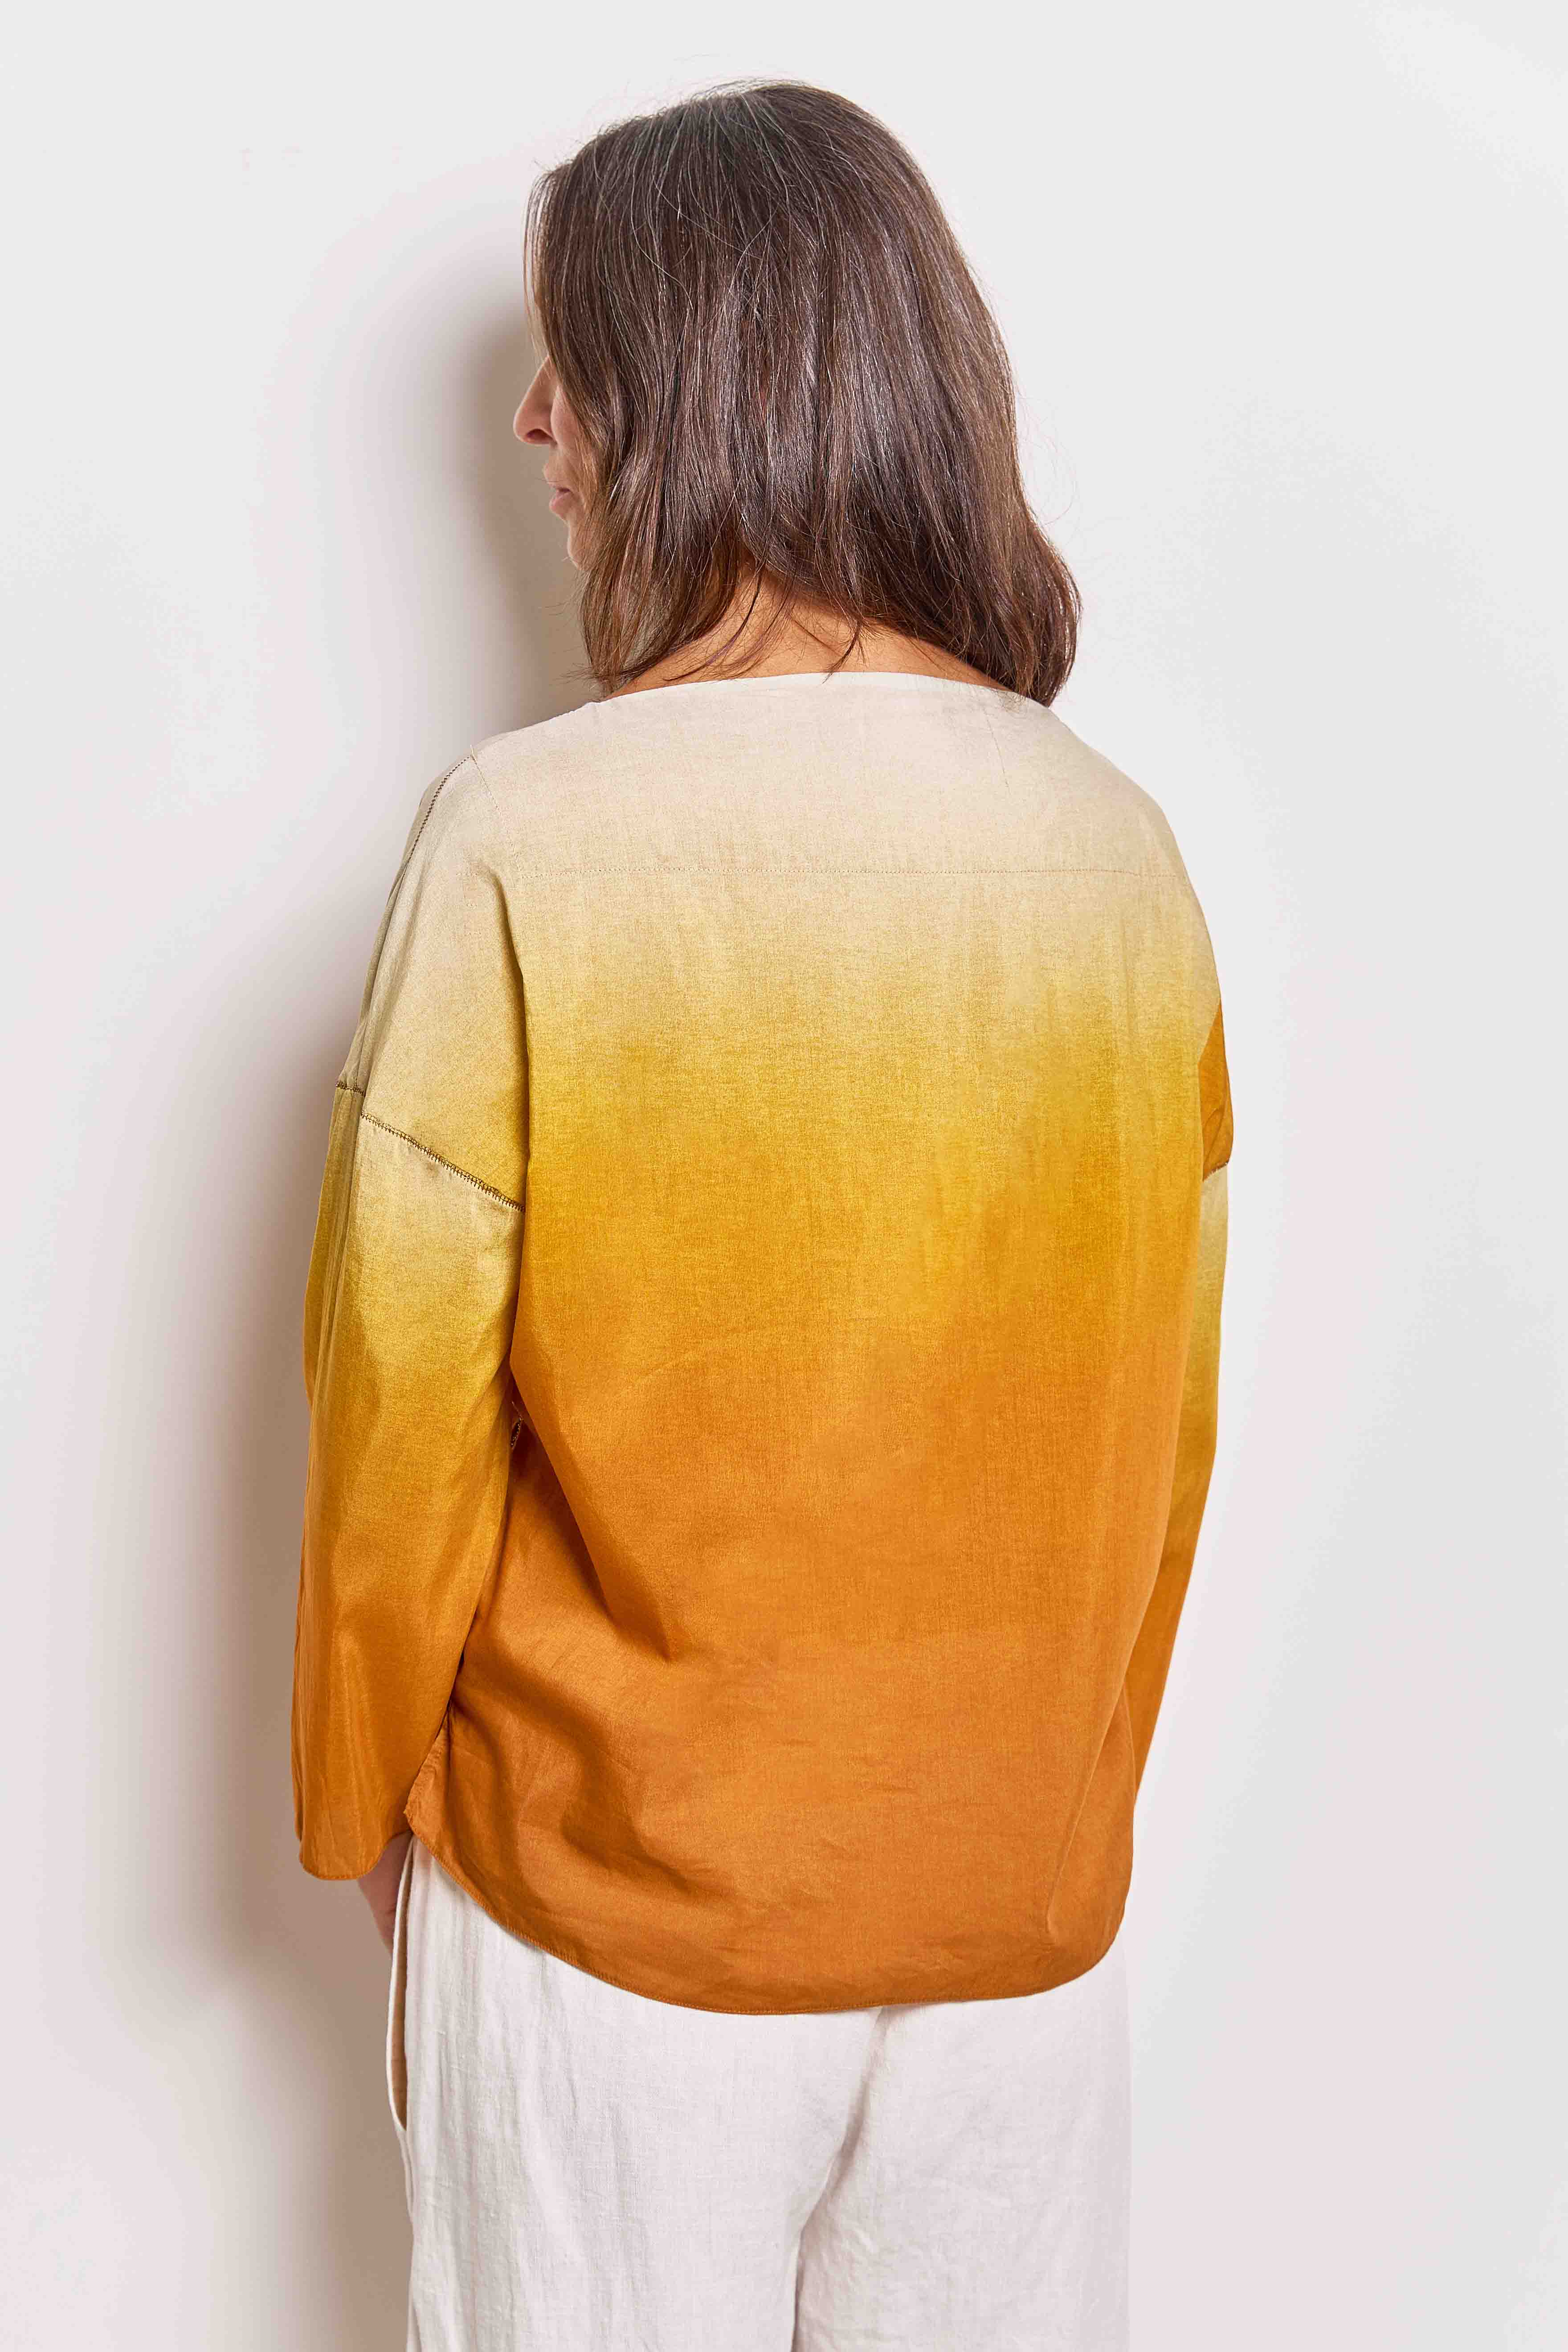 quincy light ochre cotton silk top.